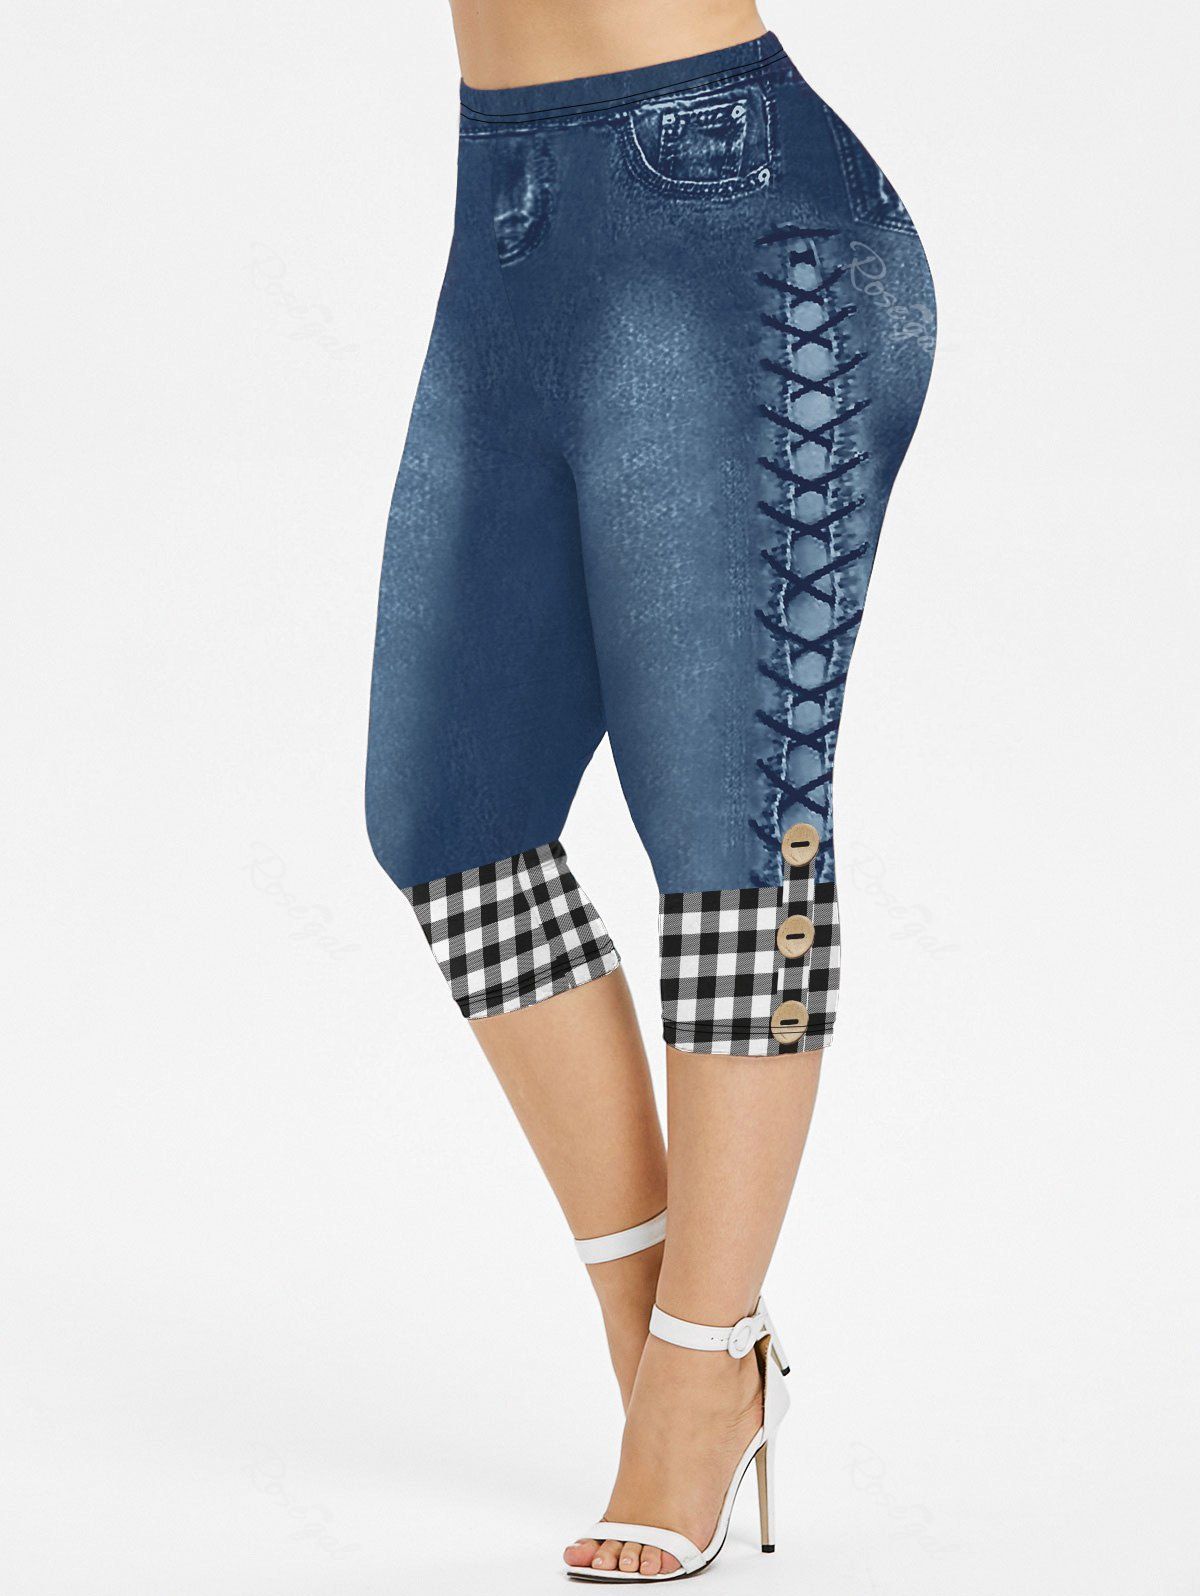 Shop Plus Size 3D Plaid Buttons Lace-up Jeans Printed Capri Jeggings  